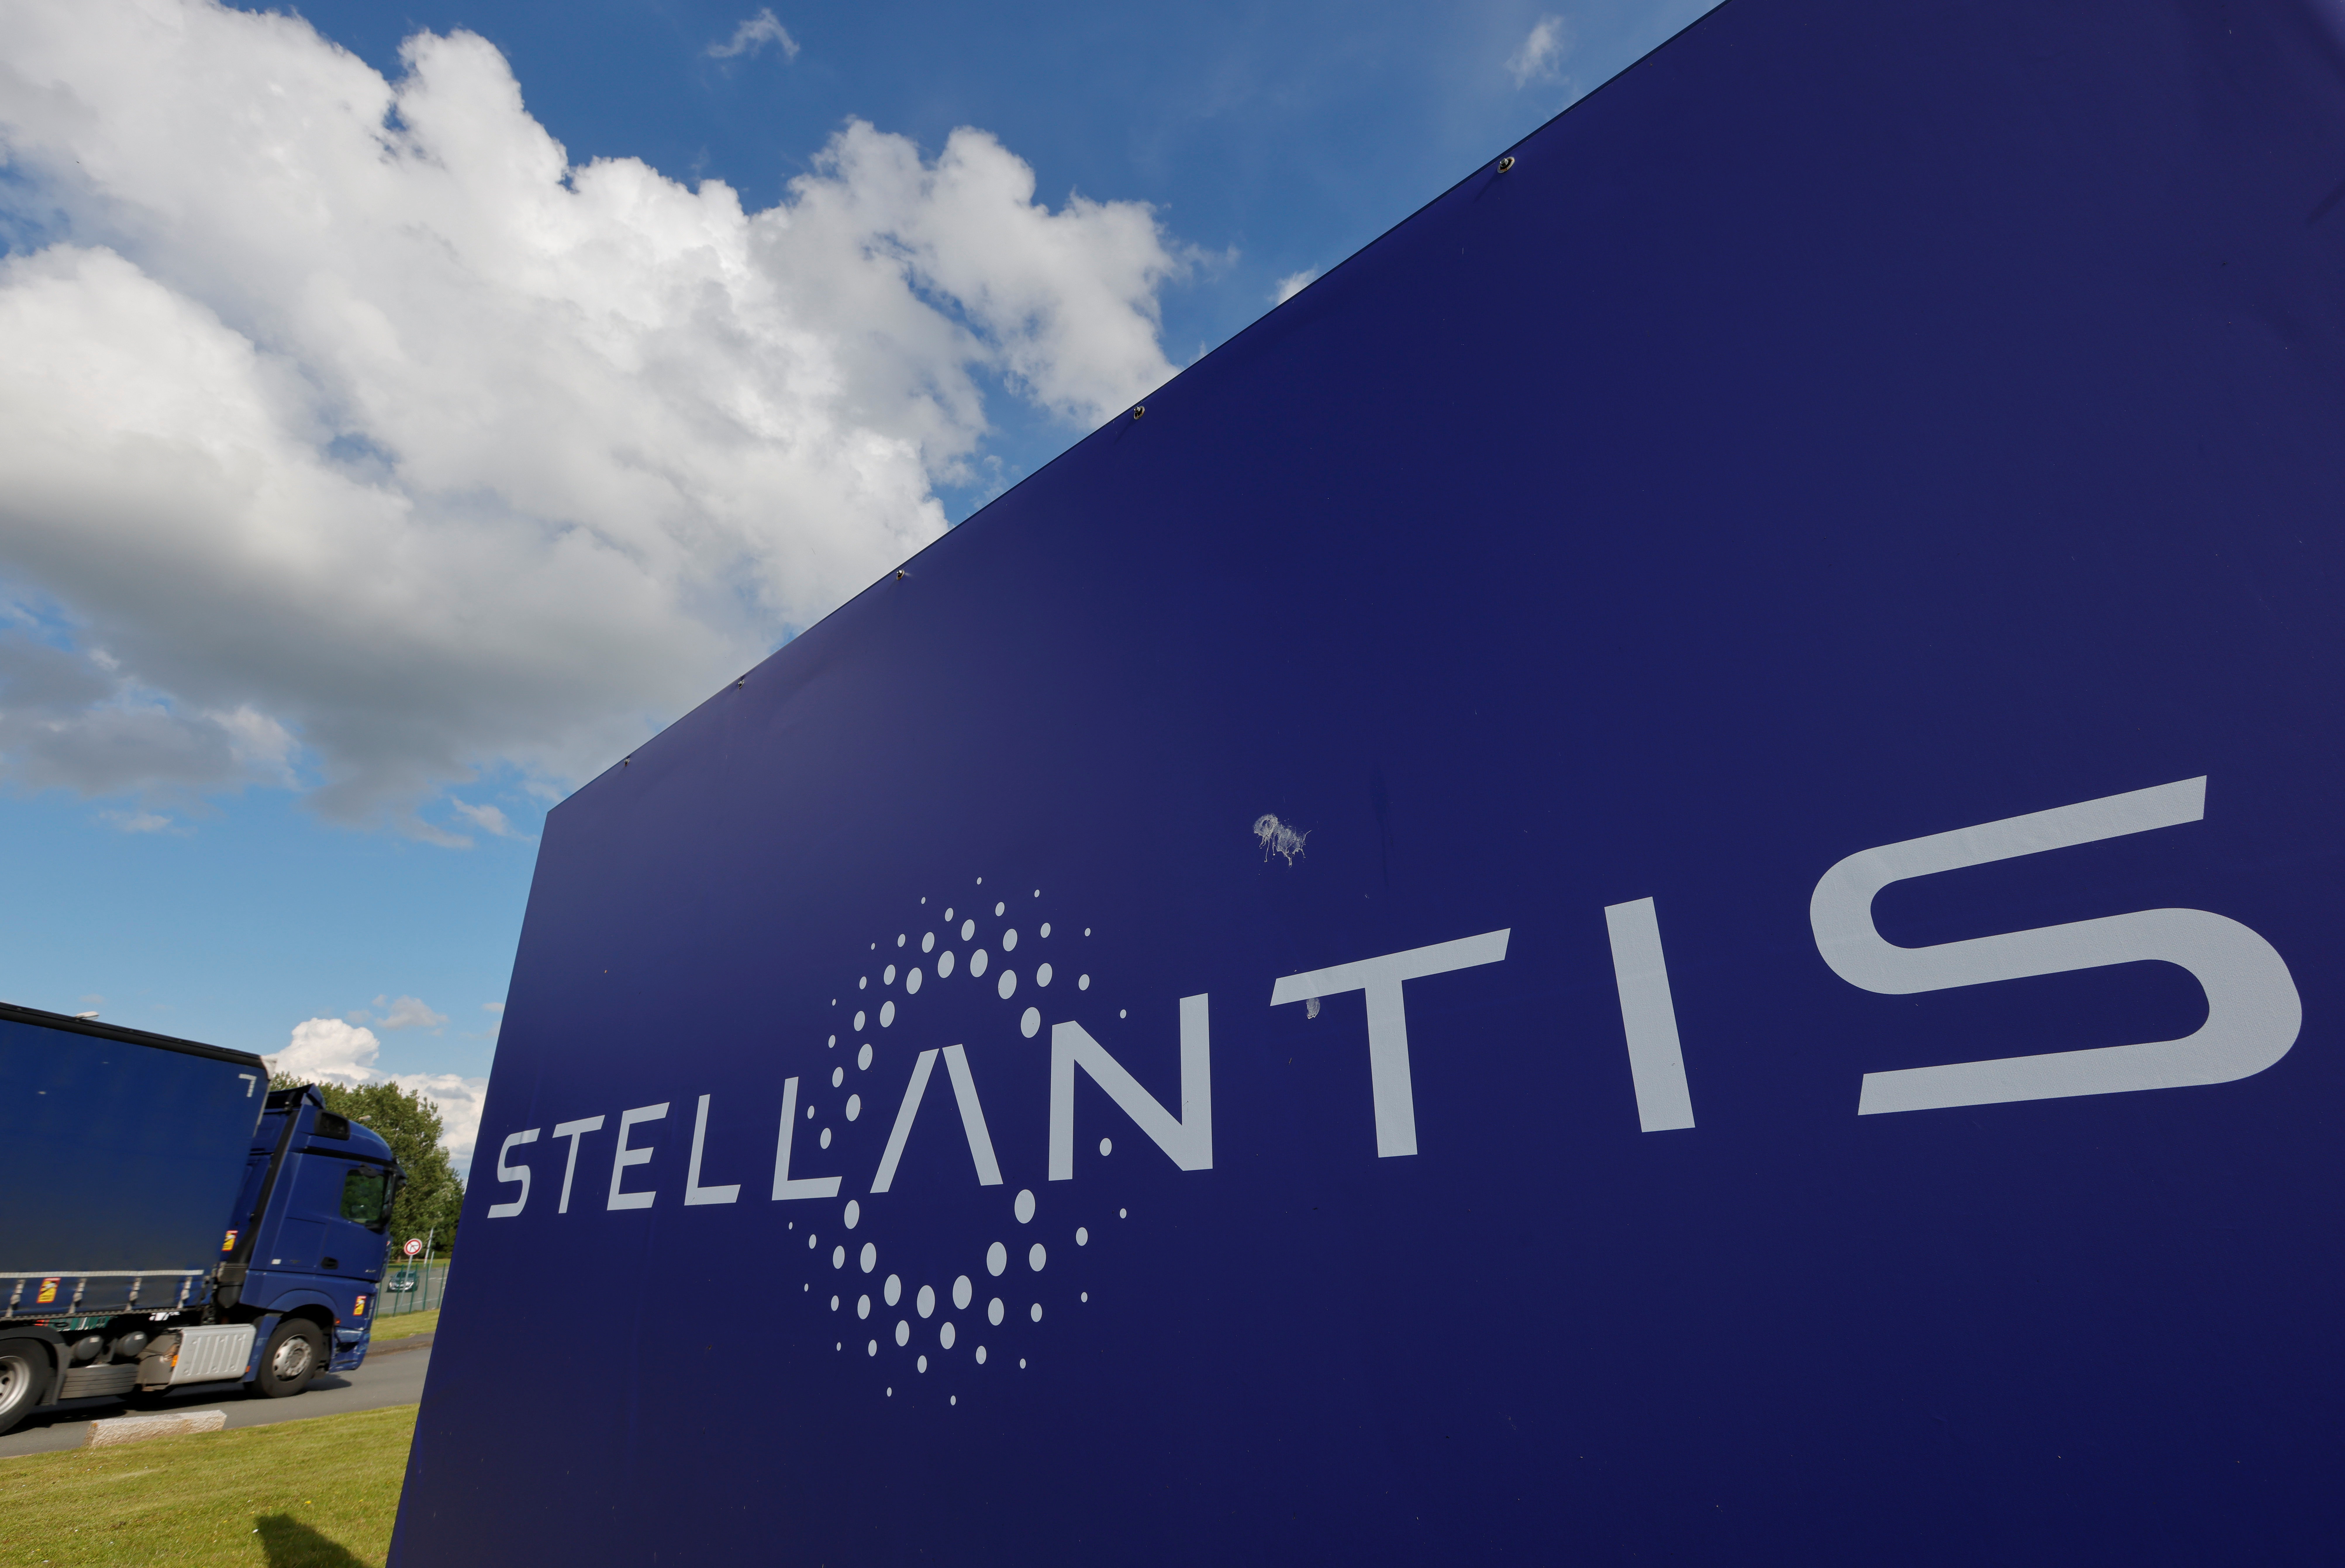 Voiture électrique : Stellantis et Samsung vont construire une deuxième usine de batteries aux Etats-Unis pour près de 3 milliards de dollars